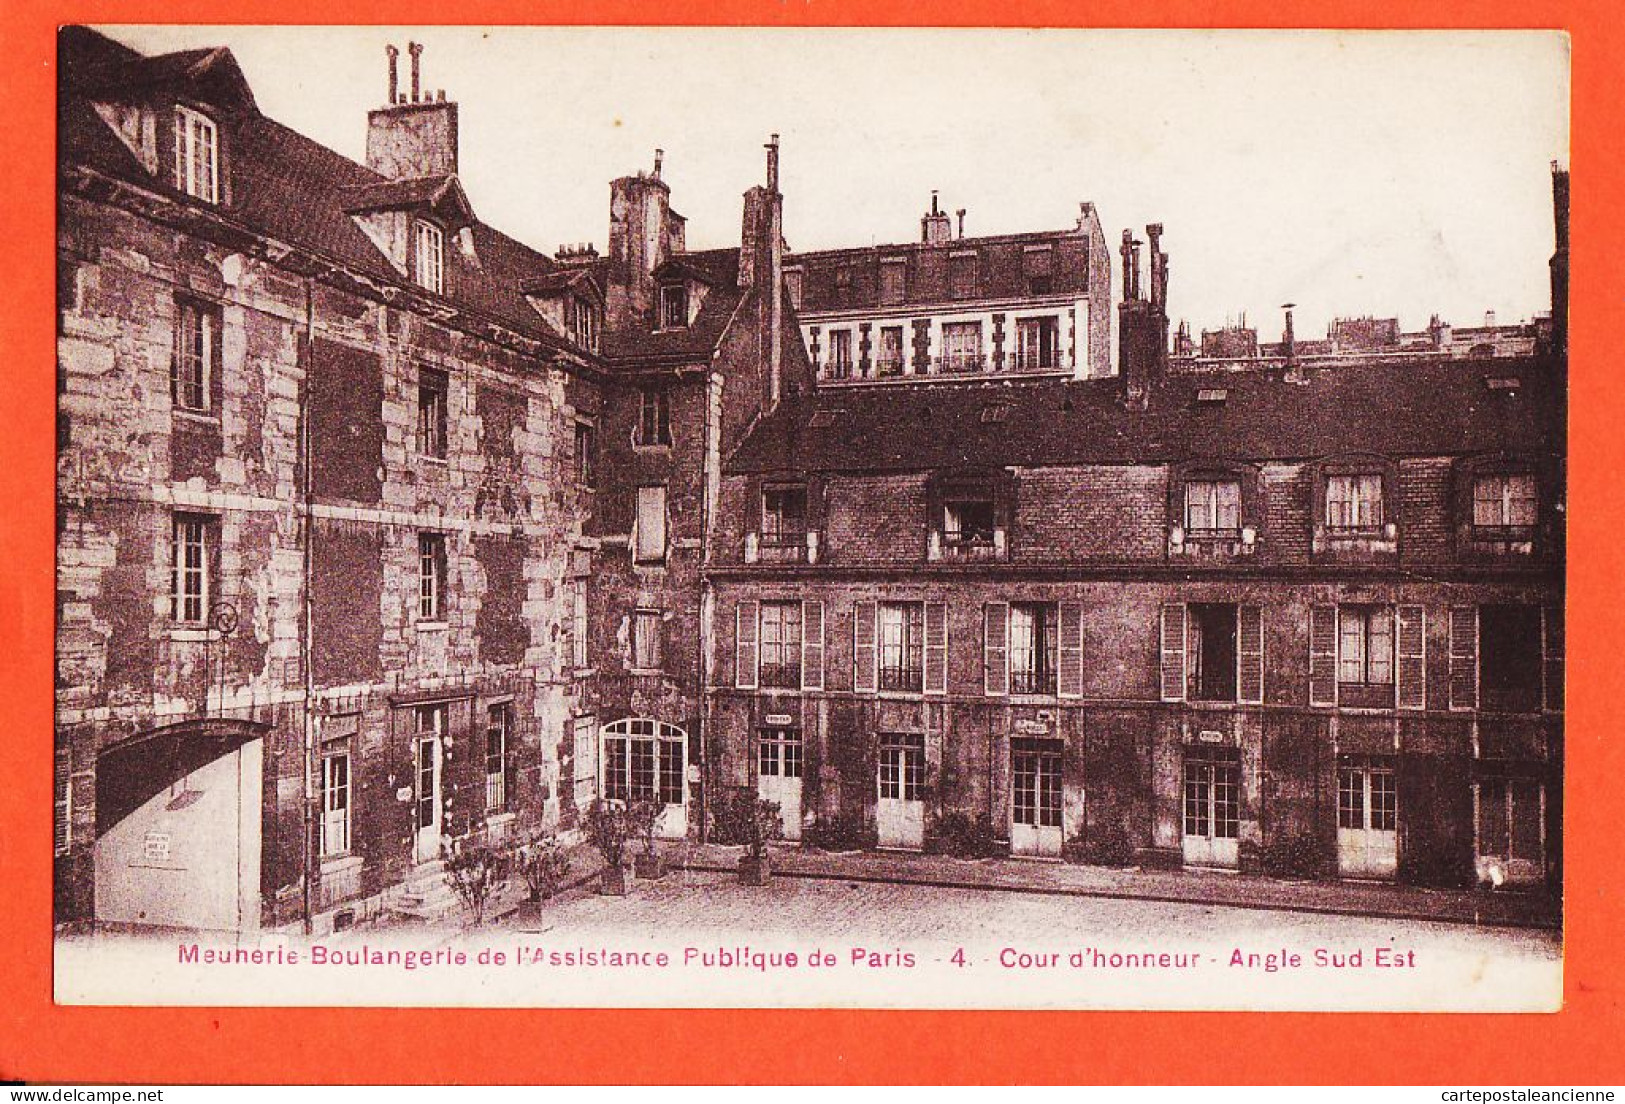 16382 / PARIS Meunerie Boulangerie Assistance Publique Cour Honneur Angle Sud-Est 1910s Simi-Bromure BREGER 4 - Gezondheid, Ziekenhuizen